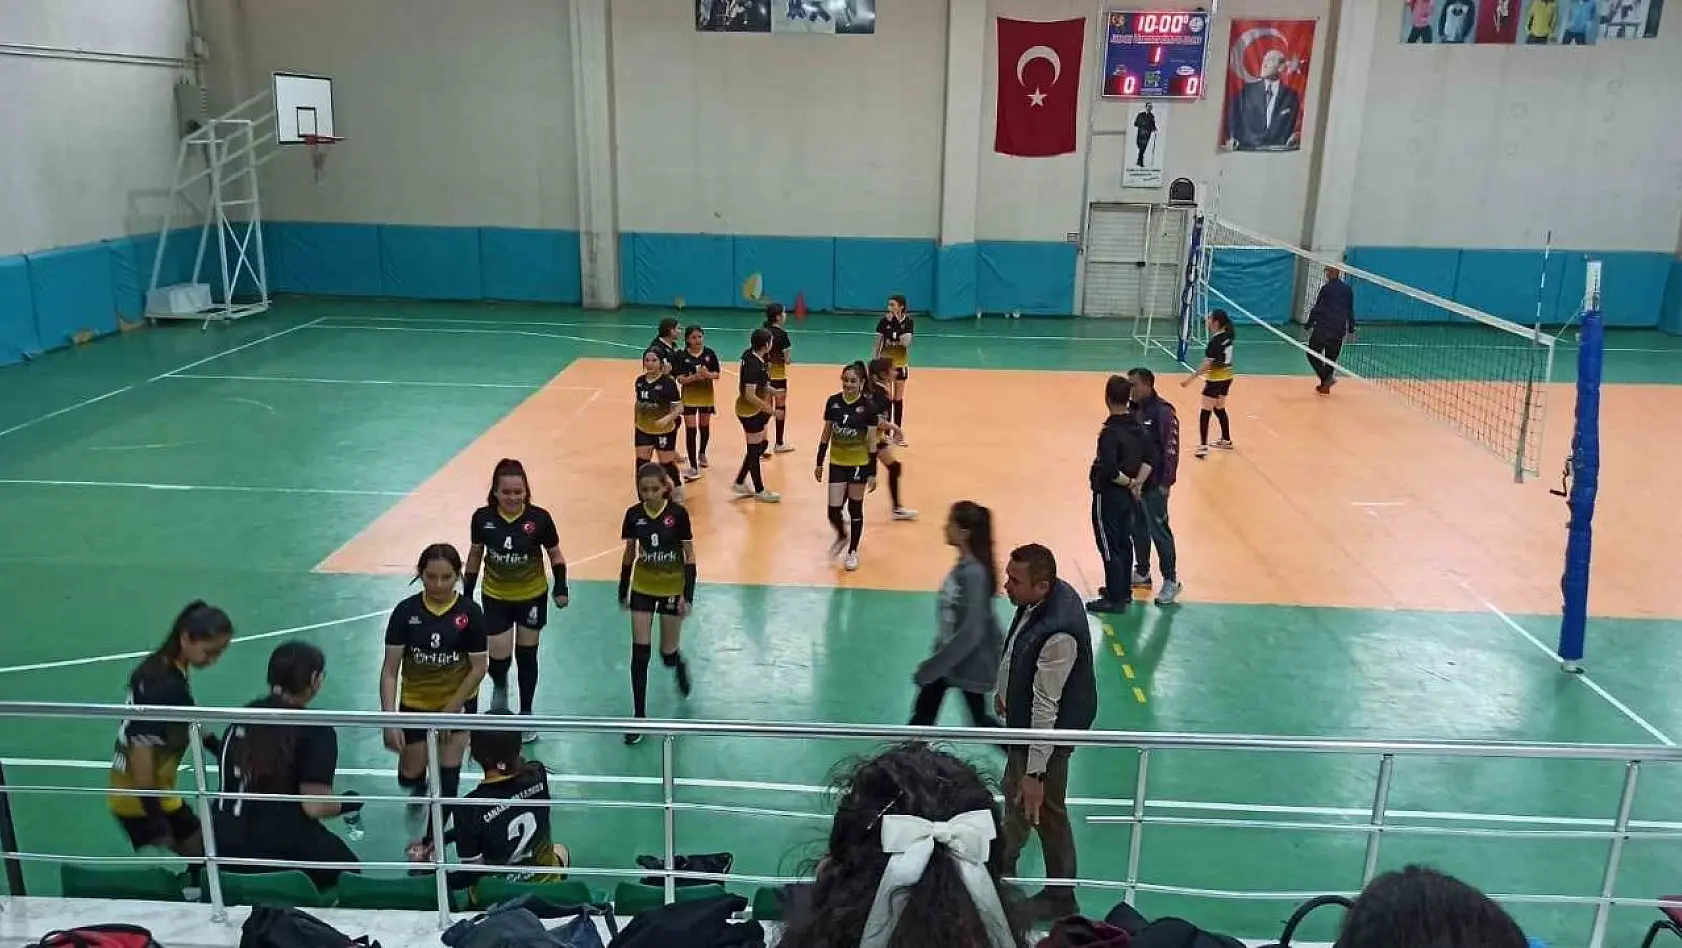 Sarıgöl'de kızlar arası voleybol turnuvası başladı